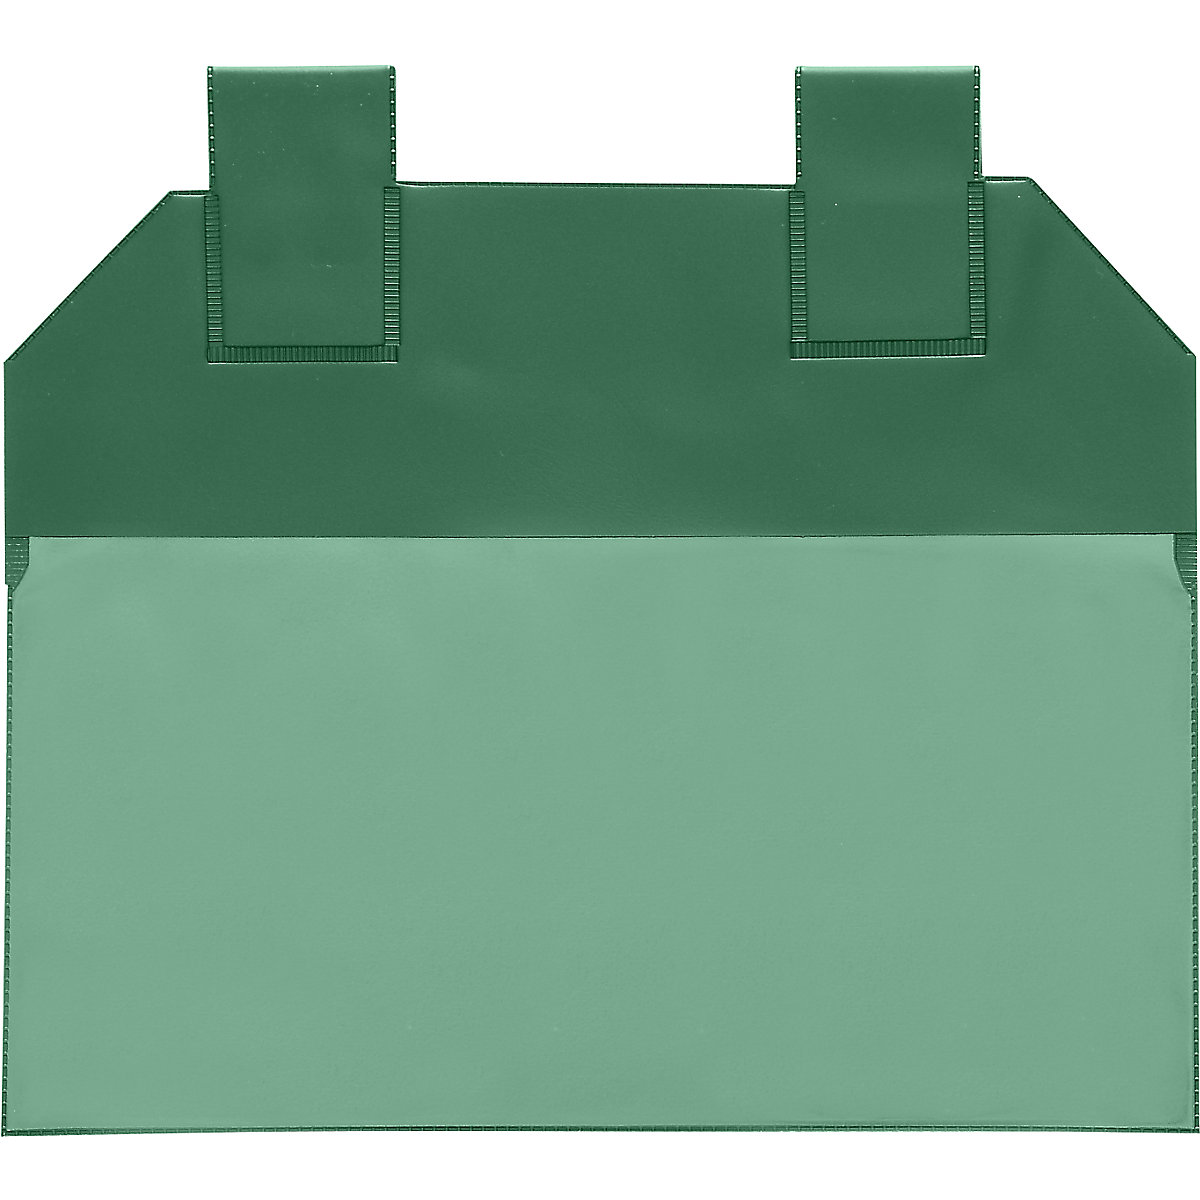 Gitterboxtaschen, VE 50 Stk, für Papierformat DIN A6, grün-2